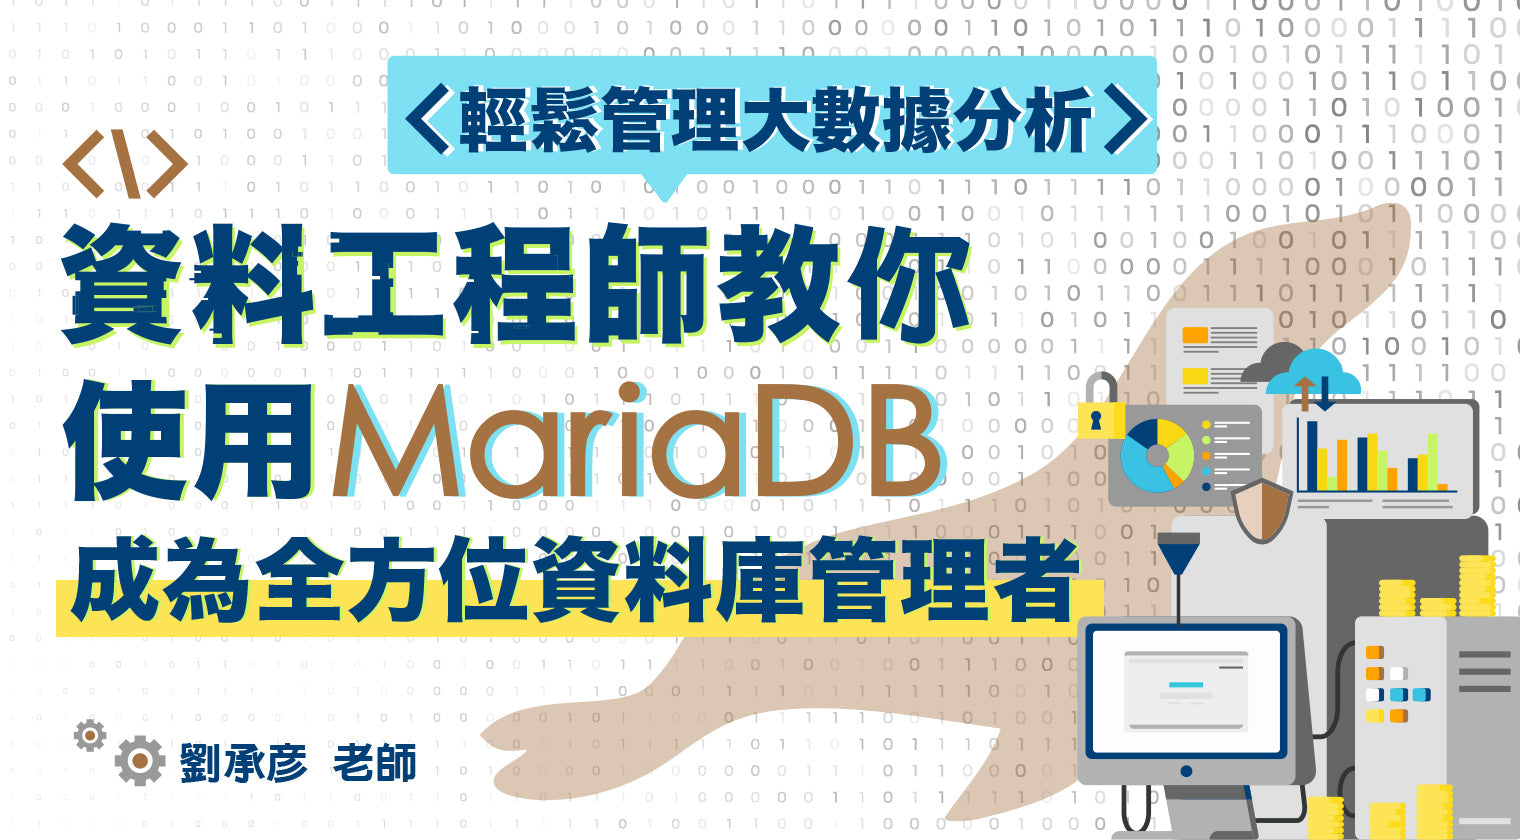 使用 MariaDB 成為全方位資料庫管理者